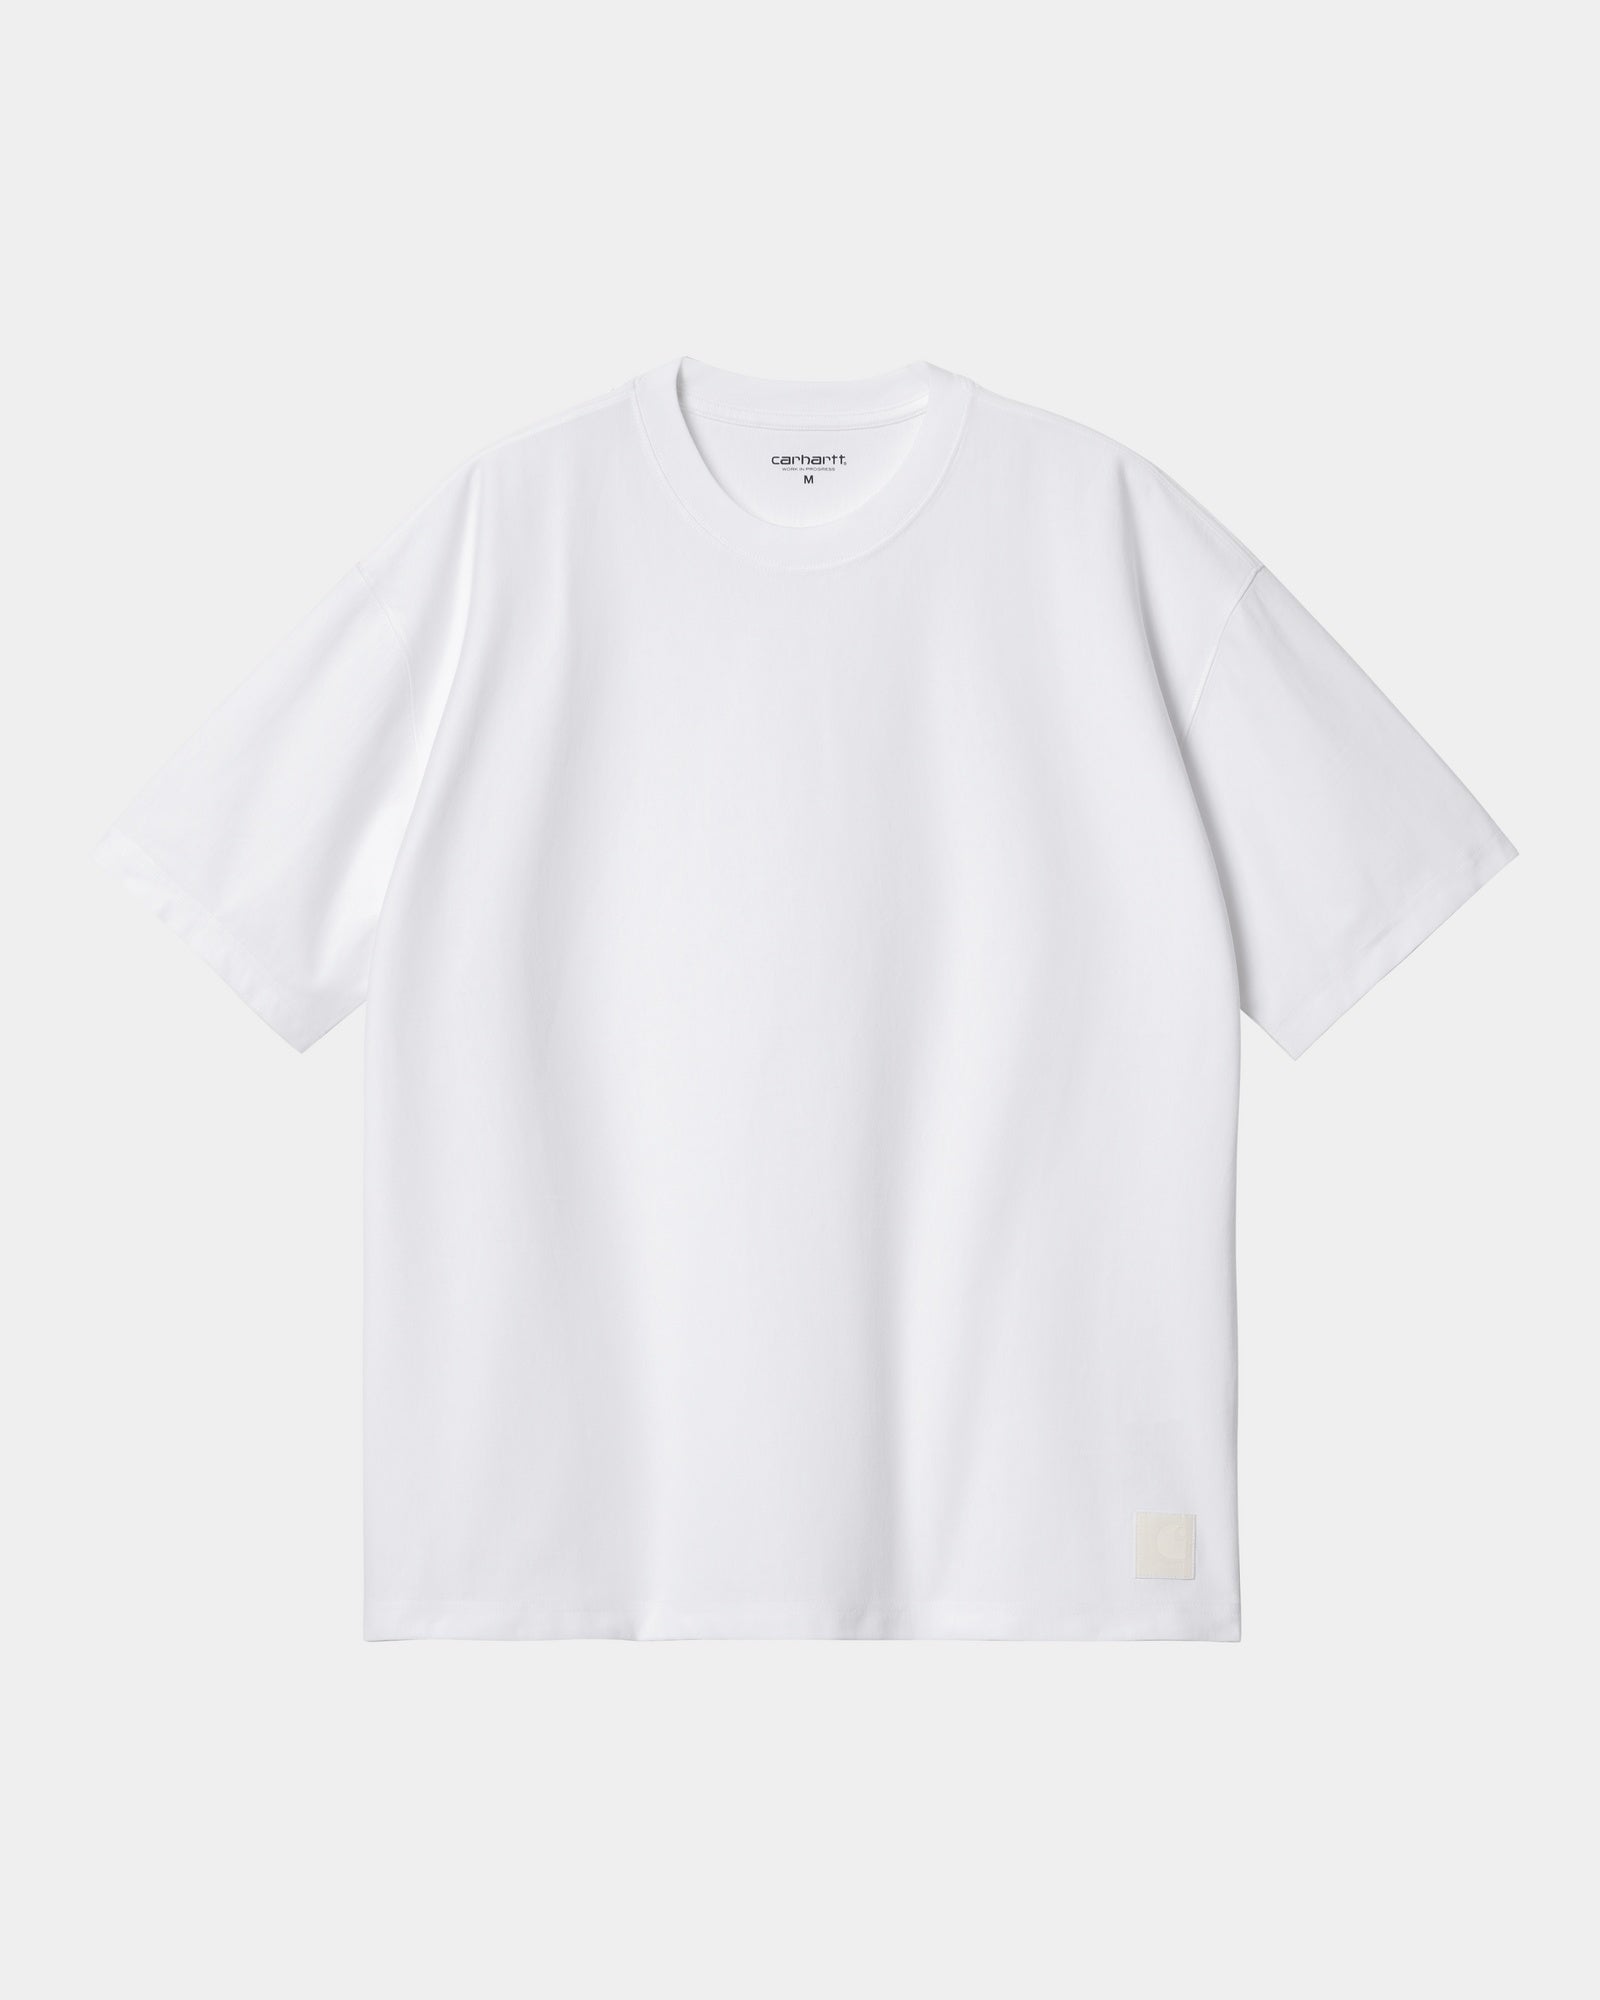 칼하트WIP Carhartt Dawson T-Shirt,White